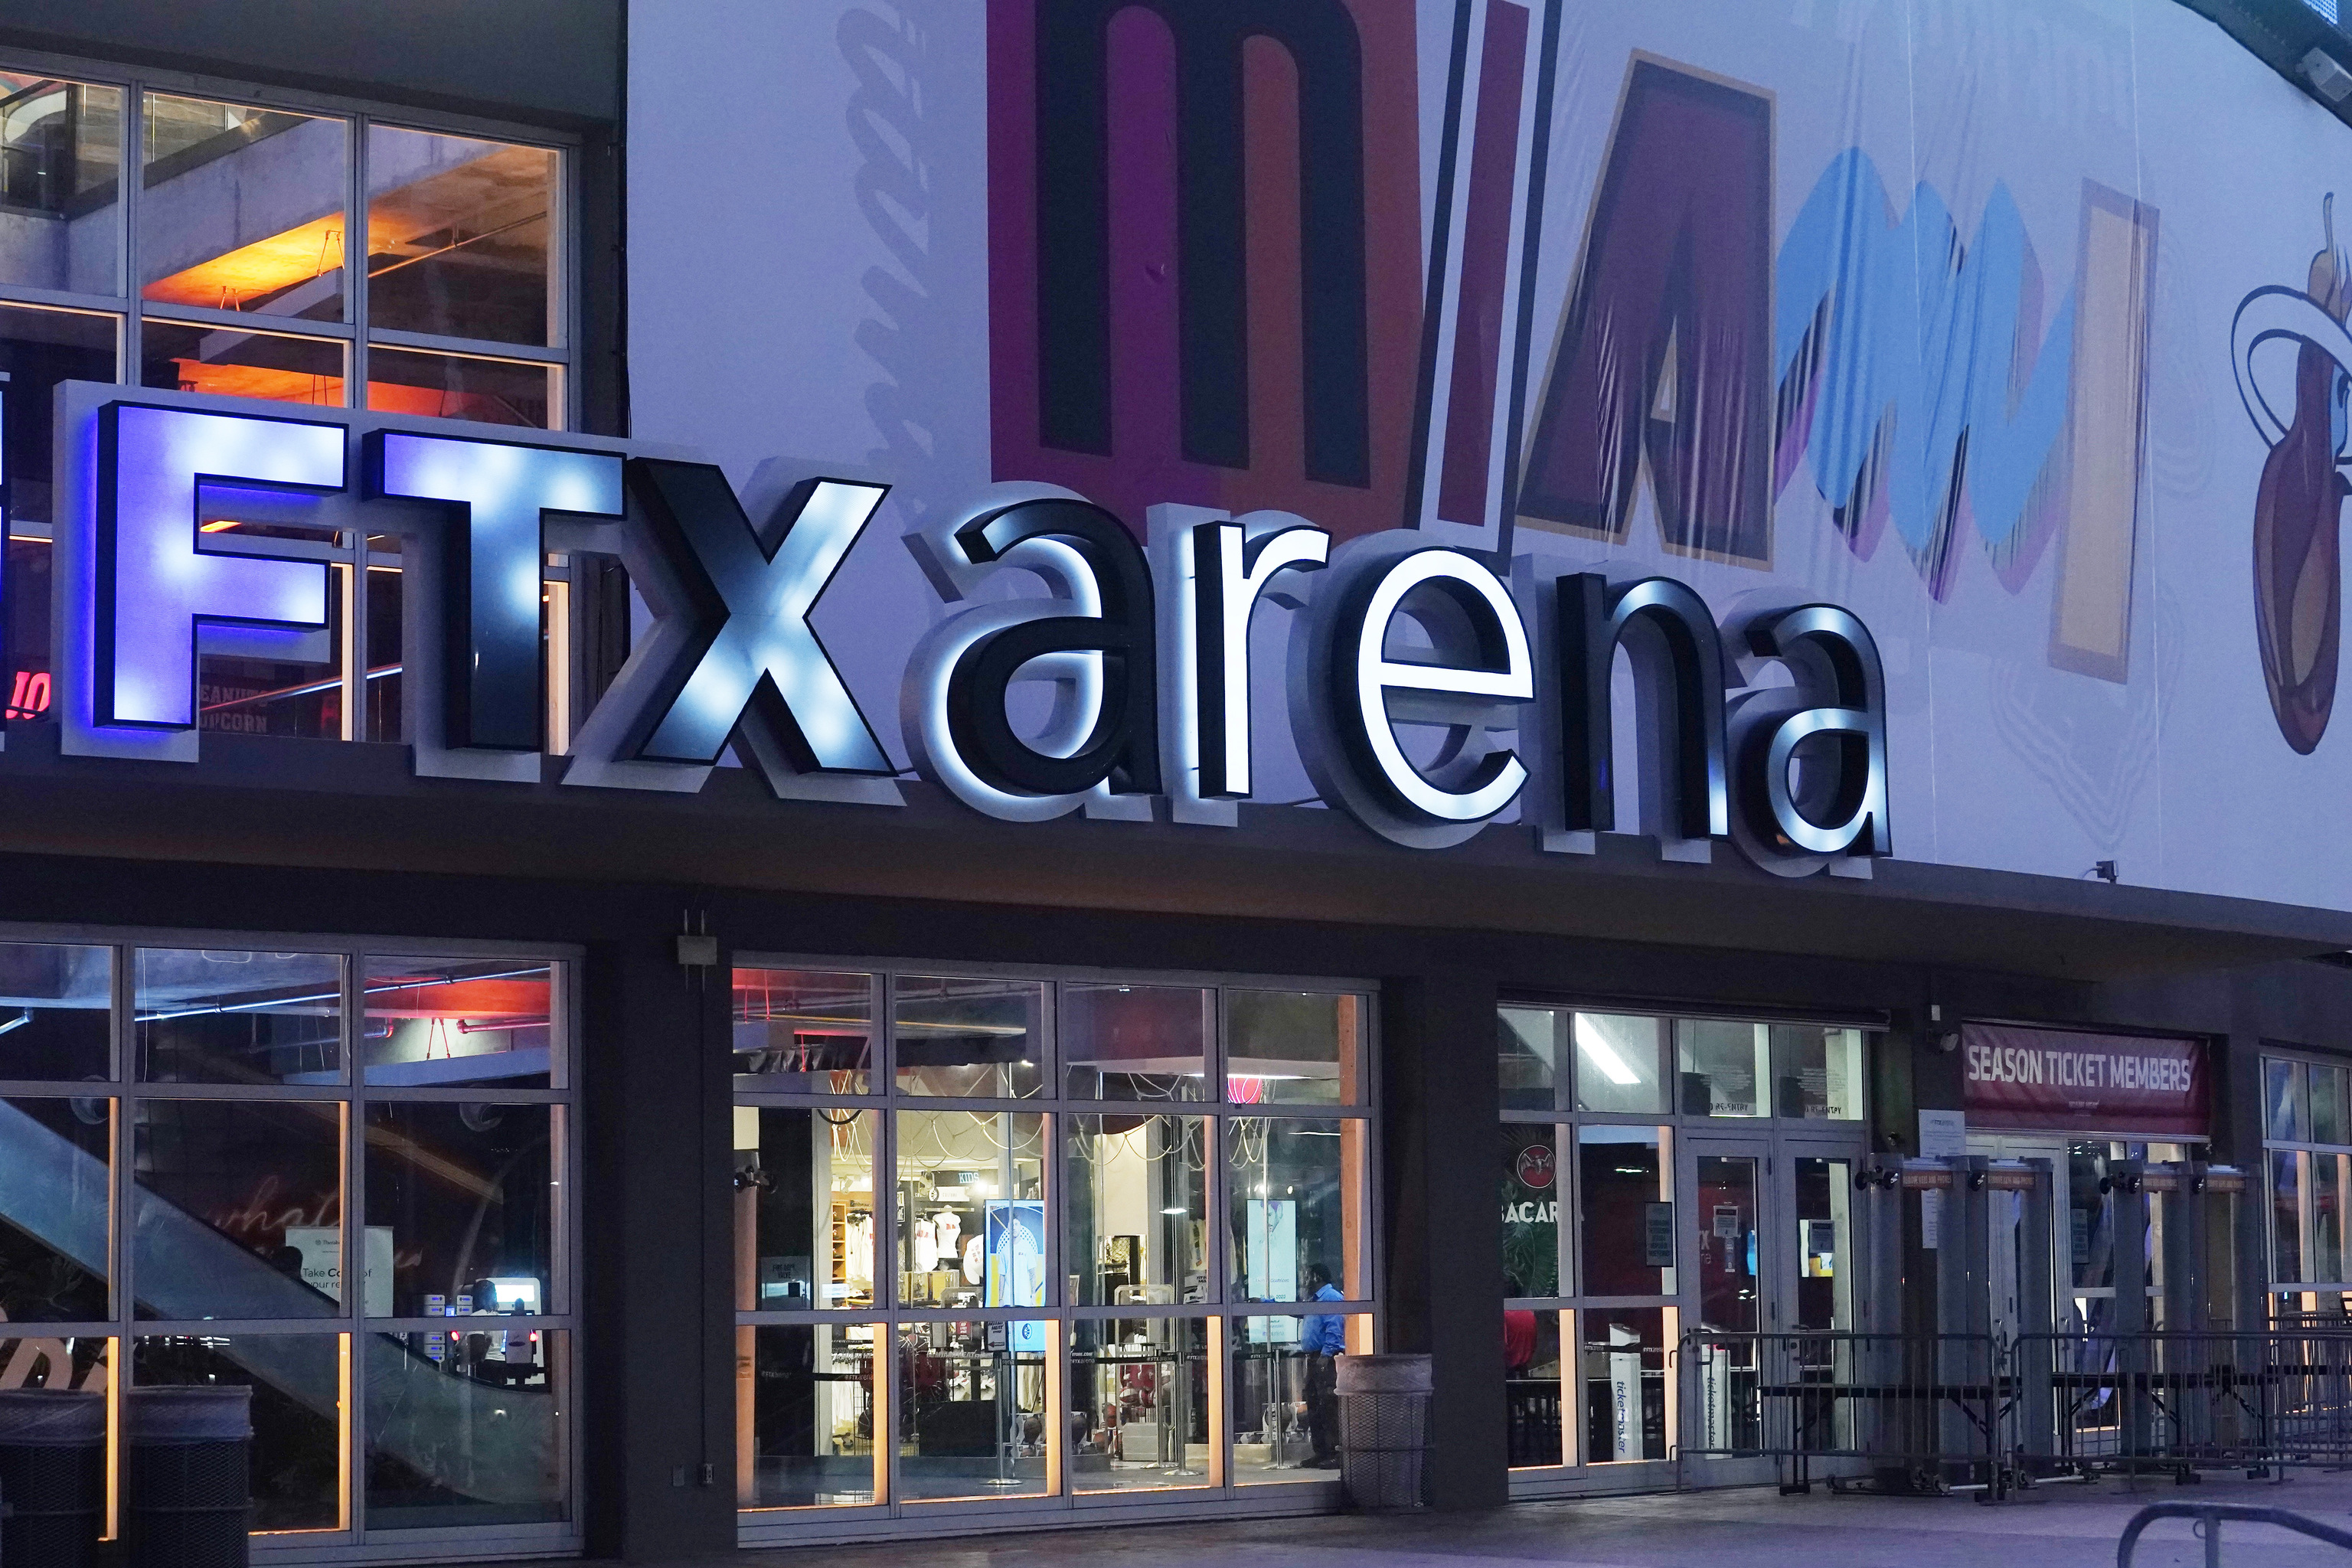 FTX Arena, pabelln en el que juegan los Miami Heat de la NBA.